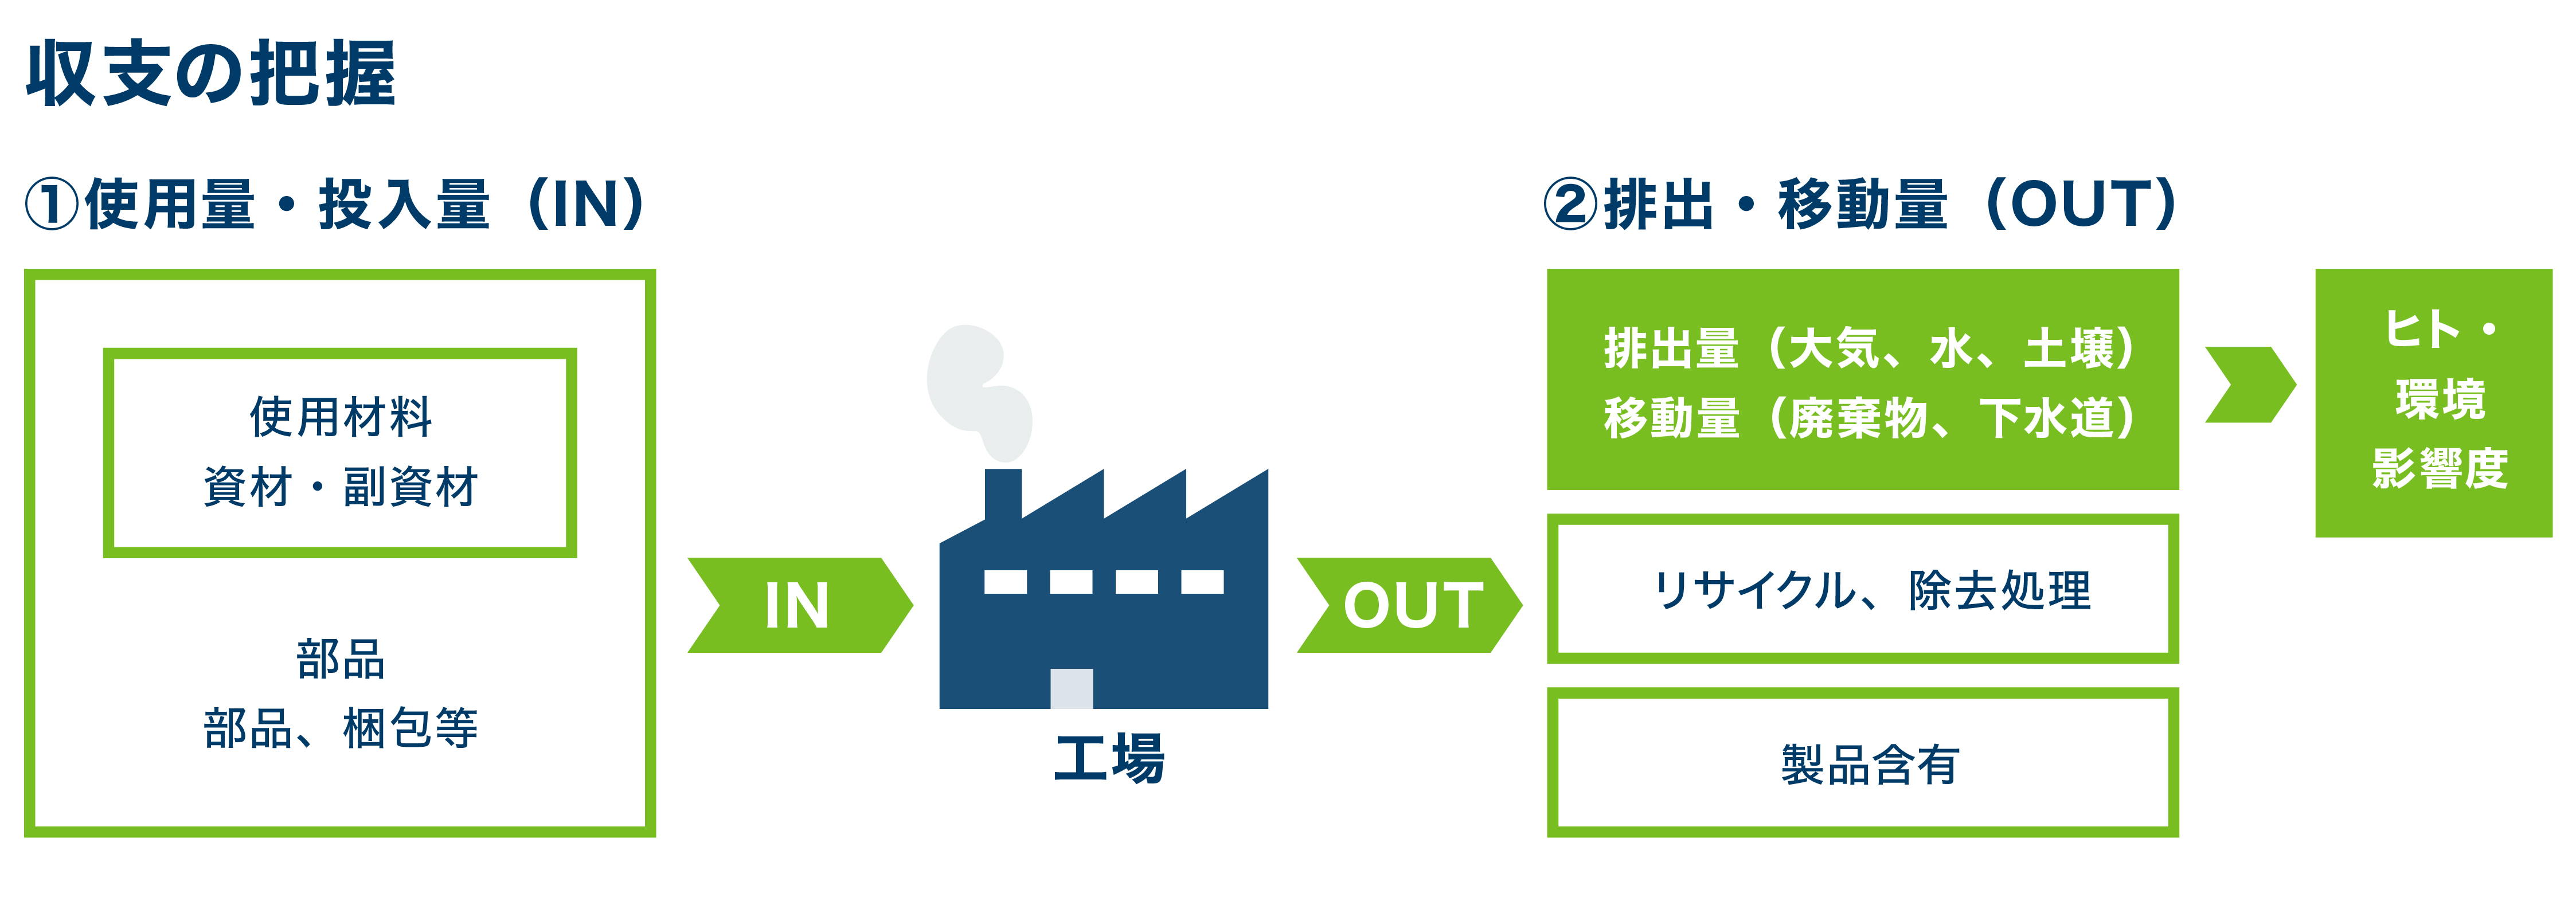 この図は、生産工場における化学物質の使用量と排出・移動量の収支についての概念図を表しています。工場に材料や部品がインプットされる量と工場から、排気・排水・廃棄物がアウトプットされる量を把握し、人体への影響度を評価しています。